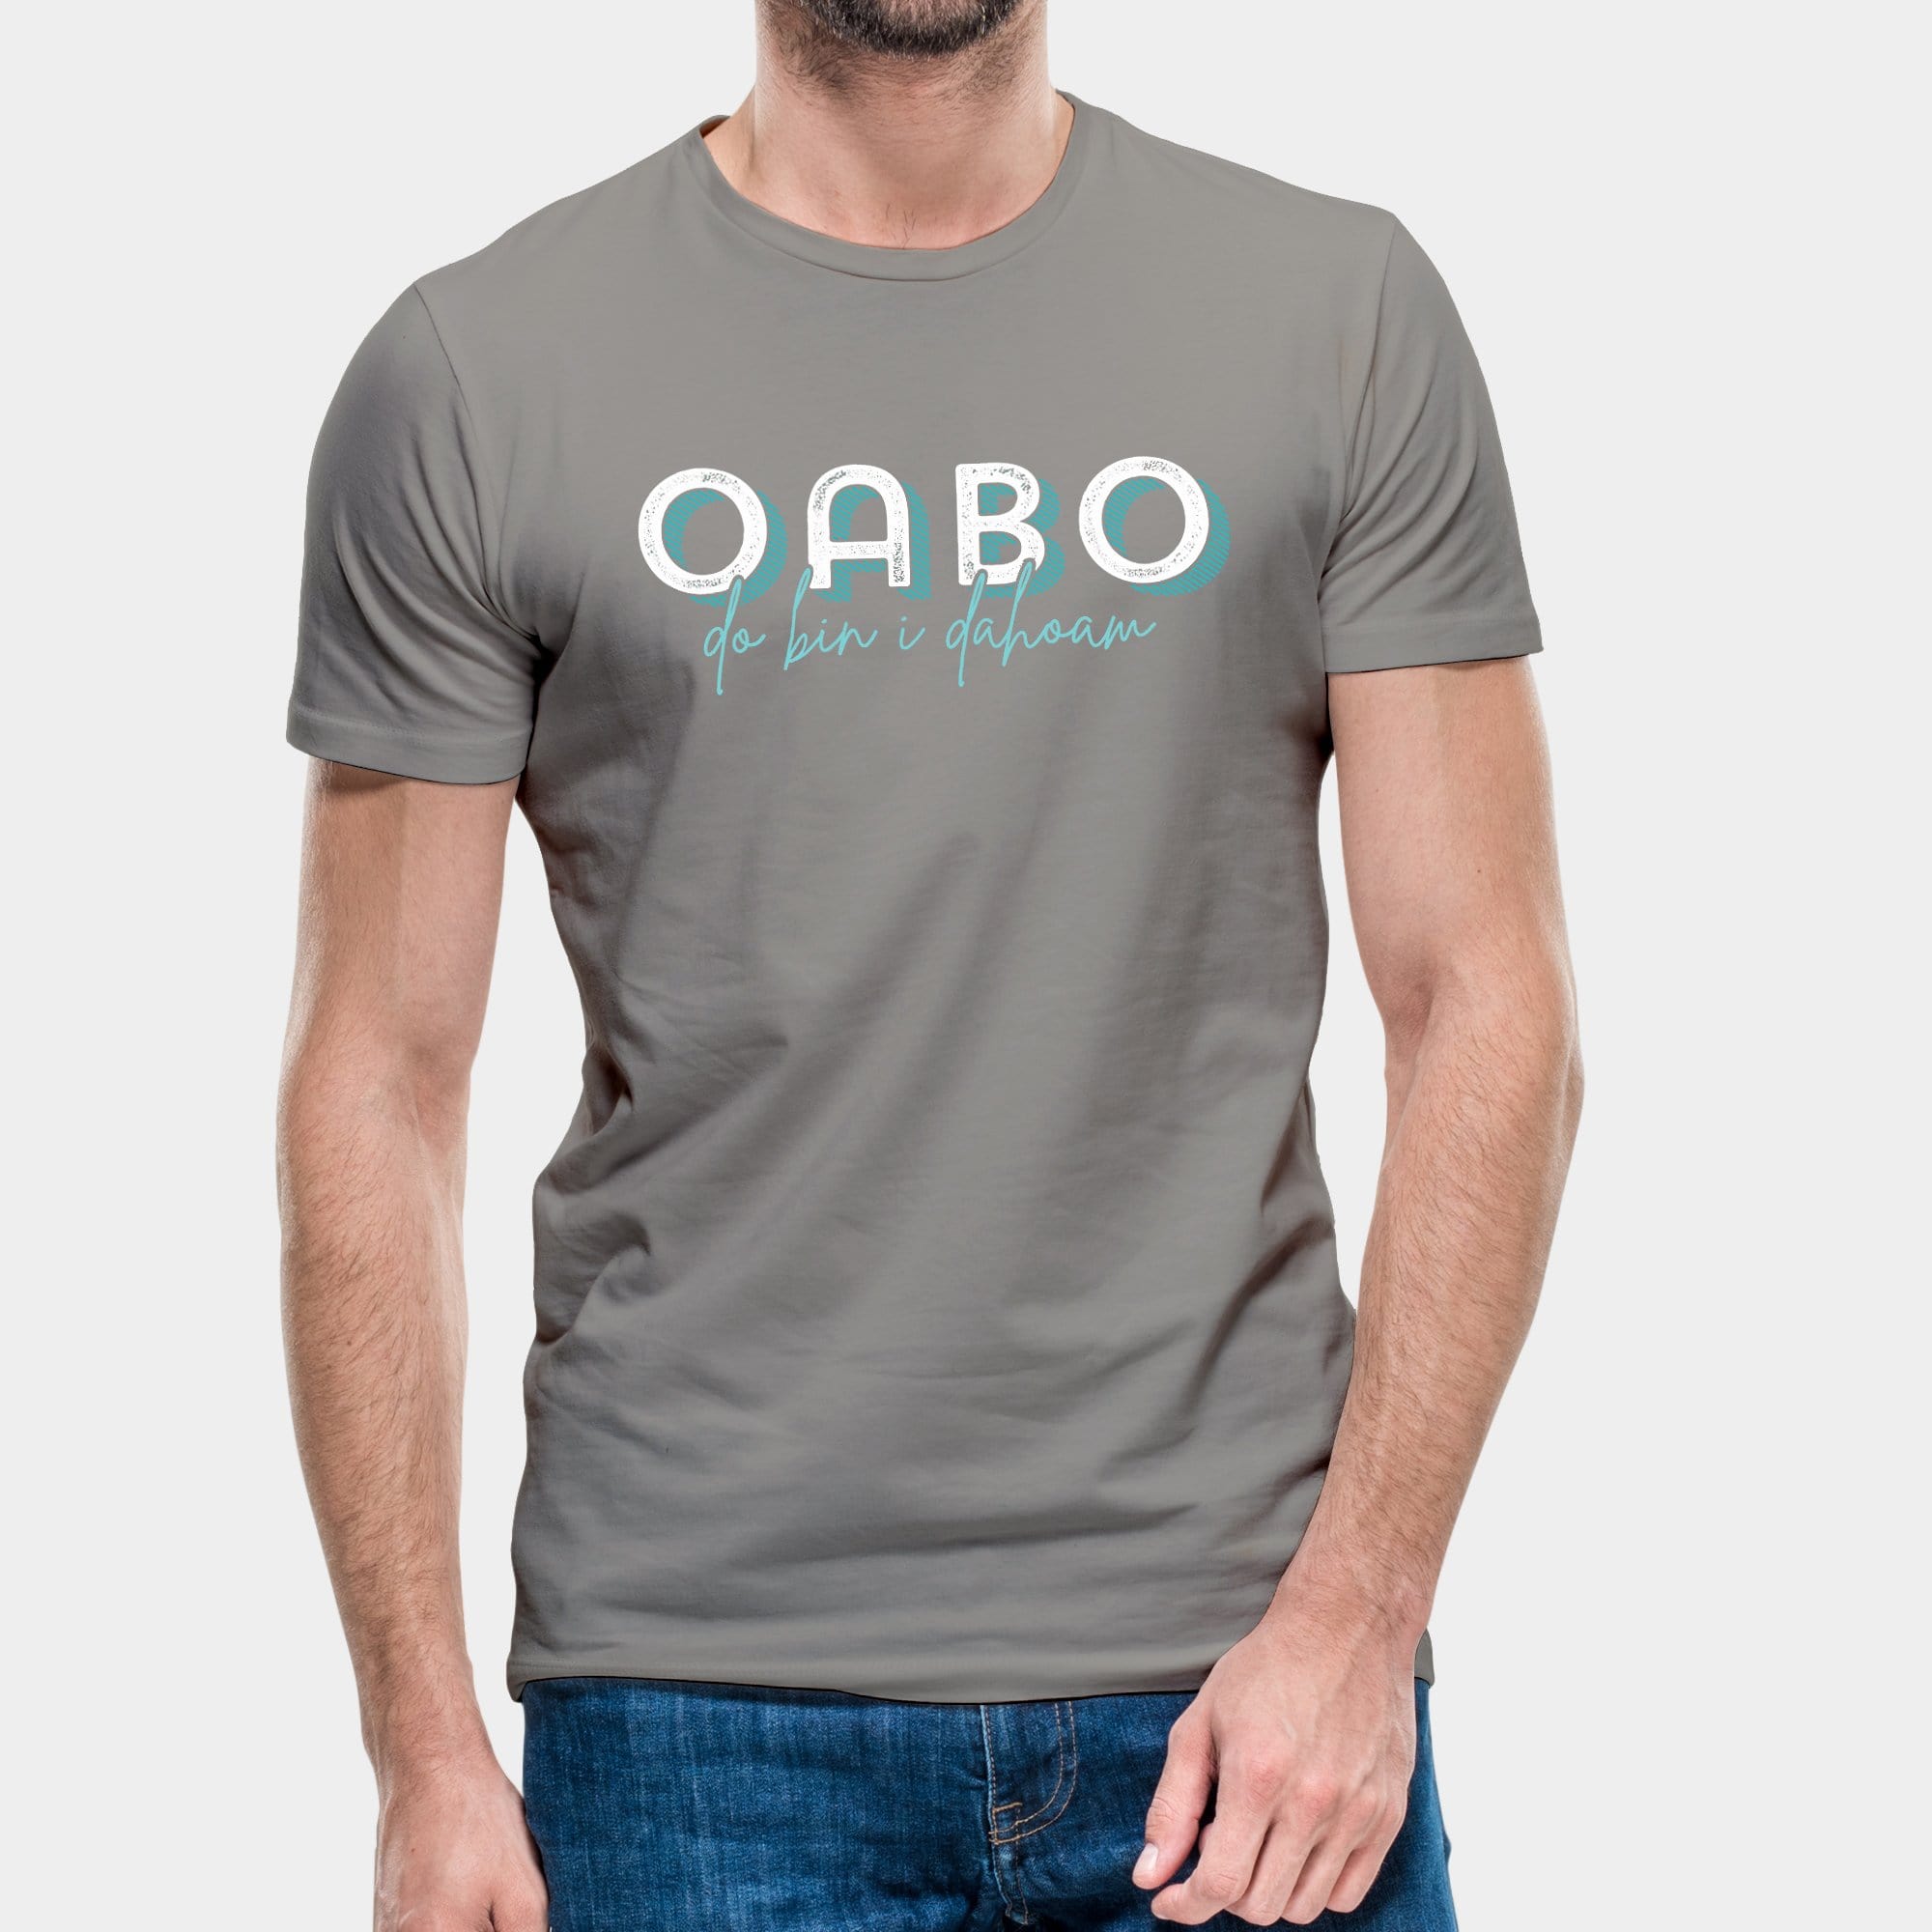 Projekt Herren-T-Shirt "Oabo" S / hellgrau - aus nachhaltiger und fairer Produktion